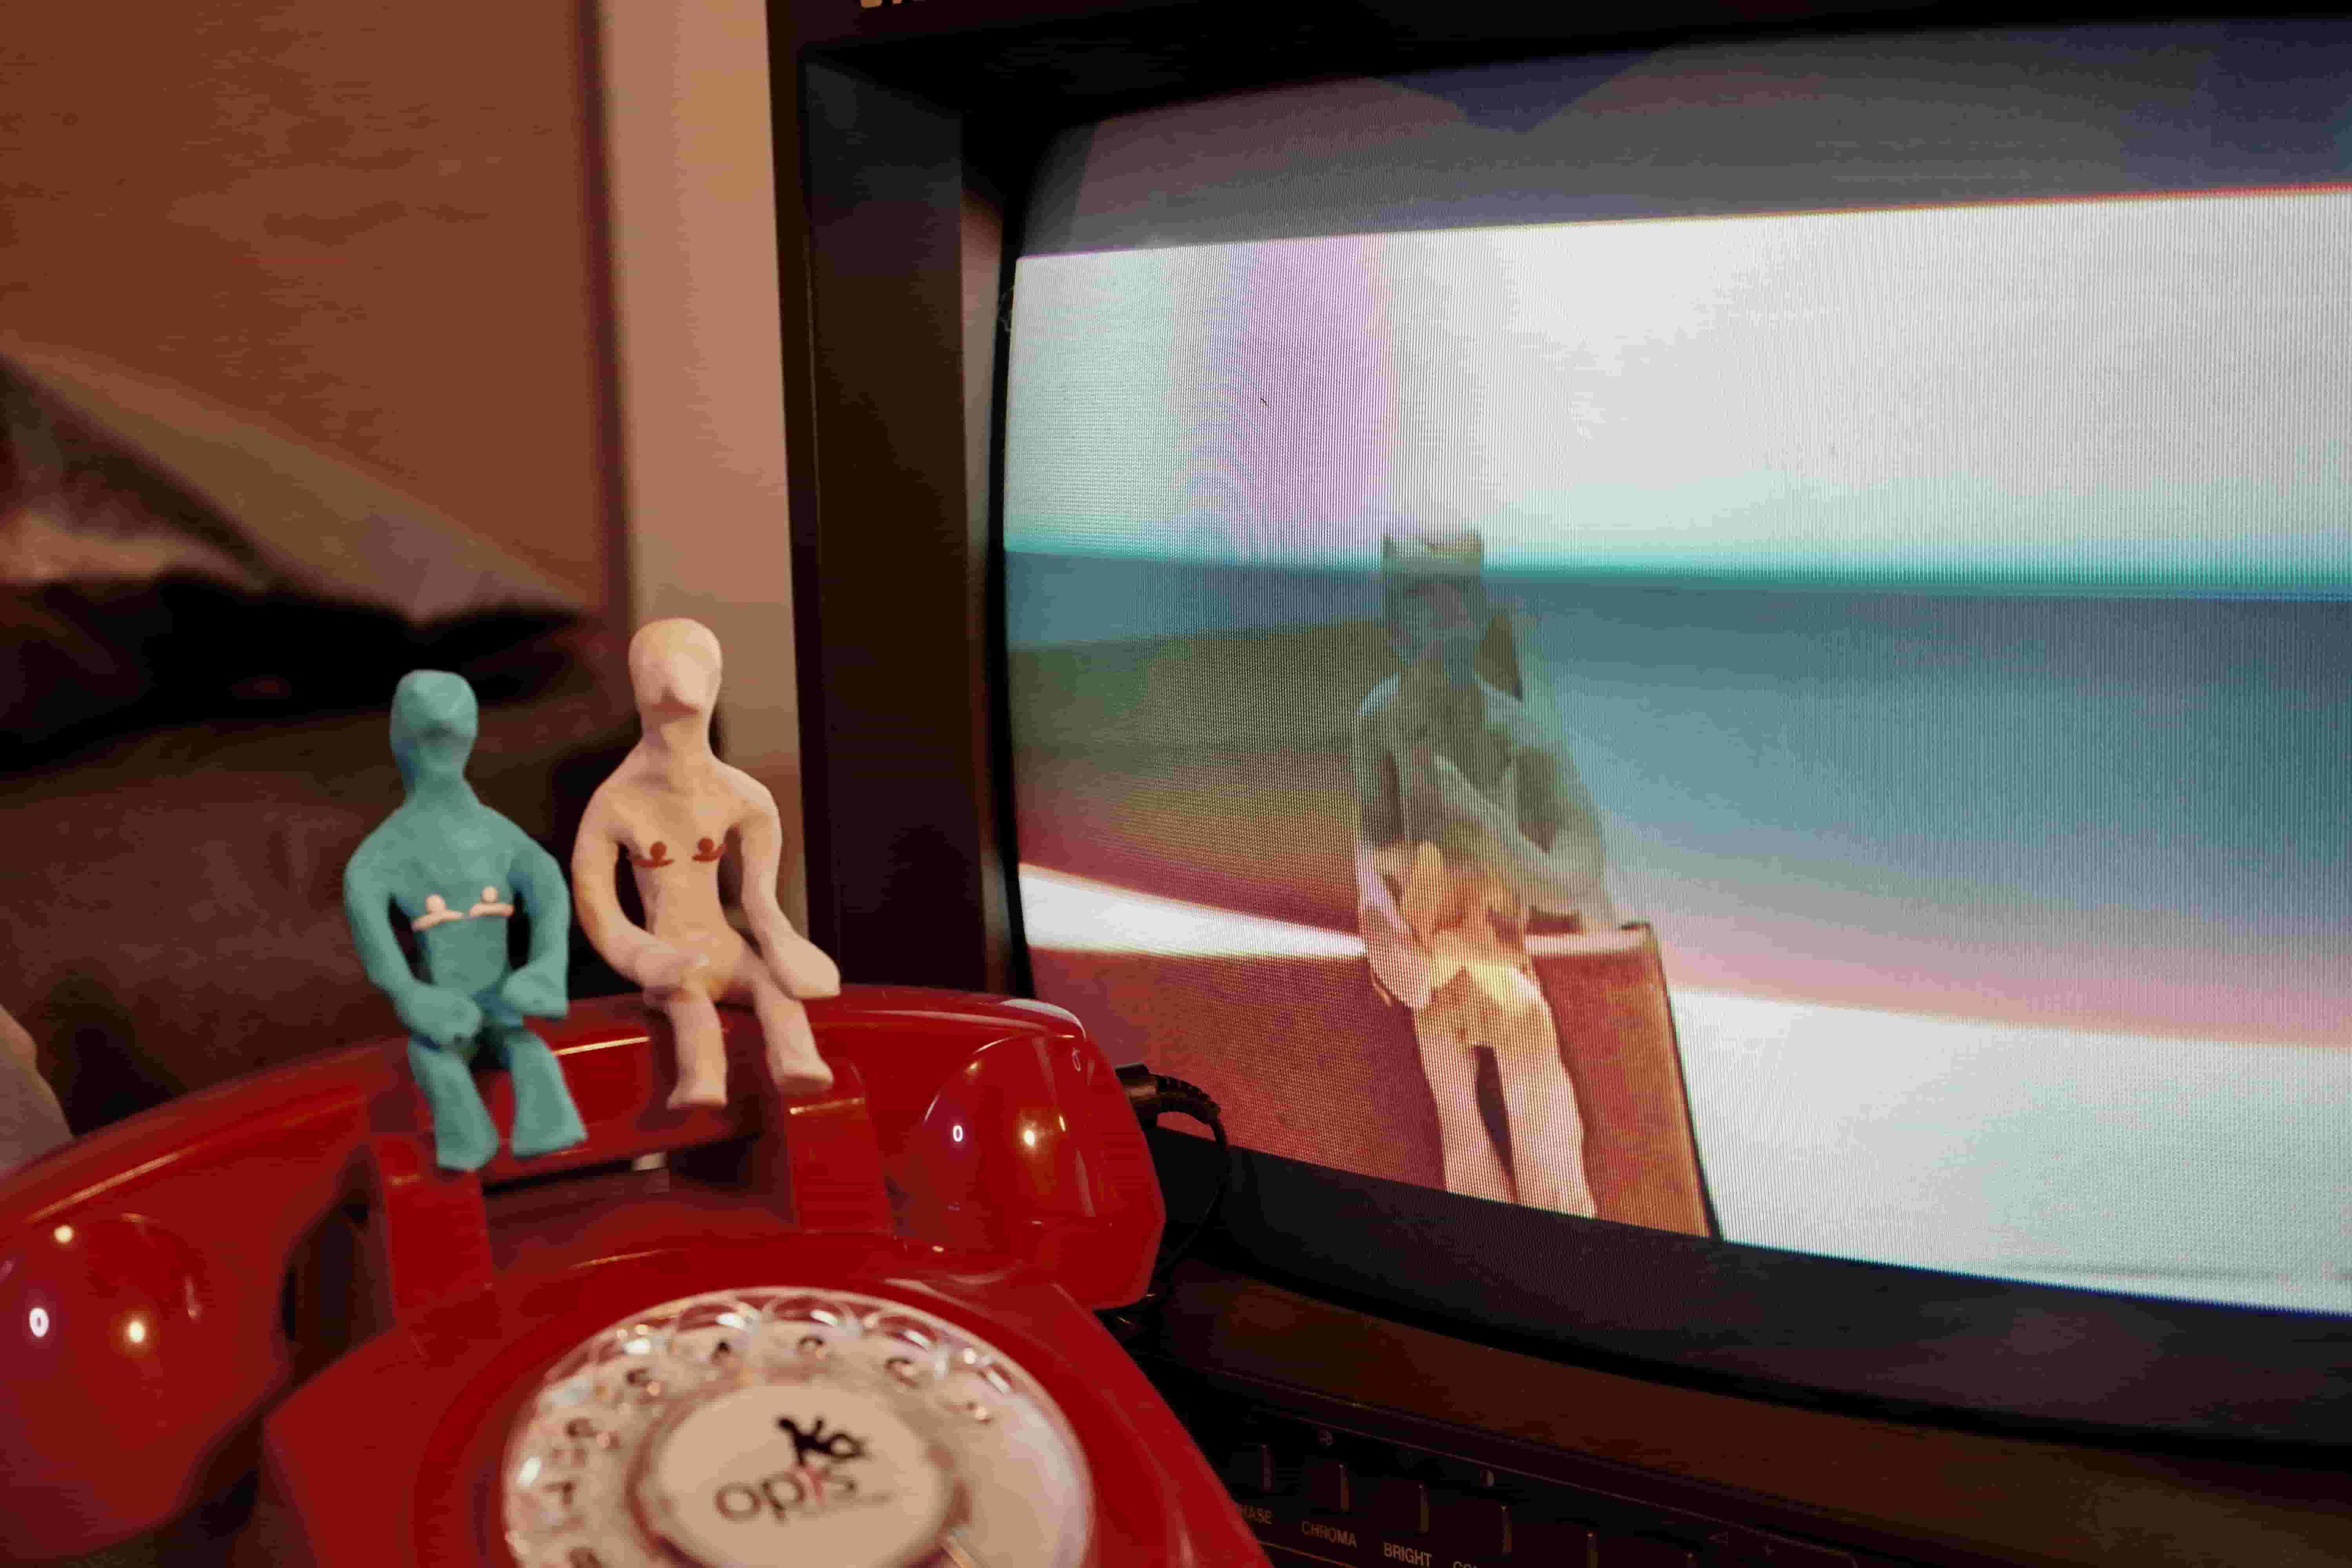 2 plasticine figures sitting on telephone